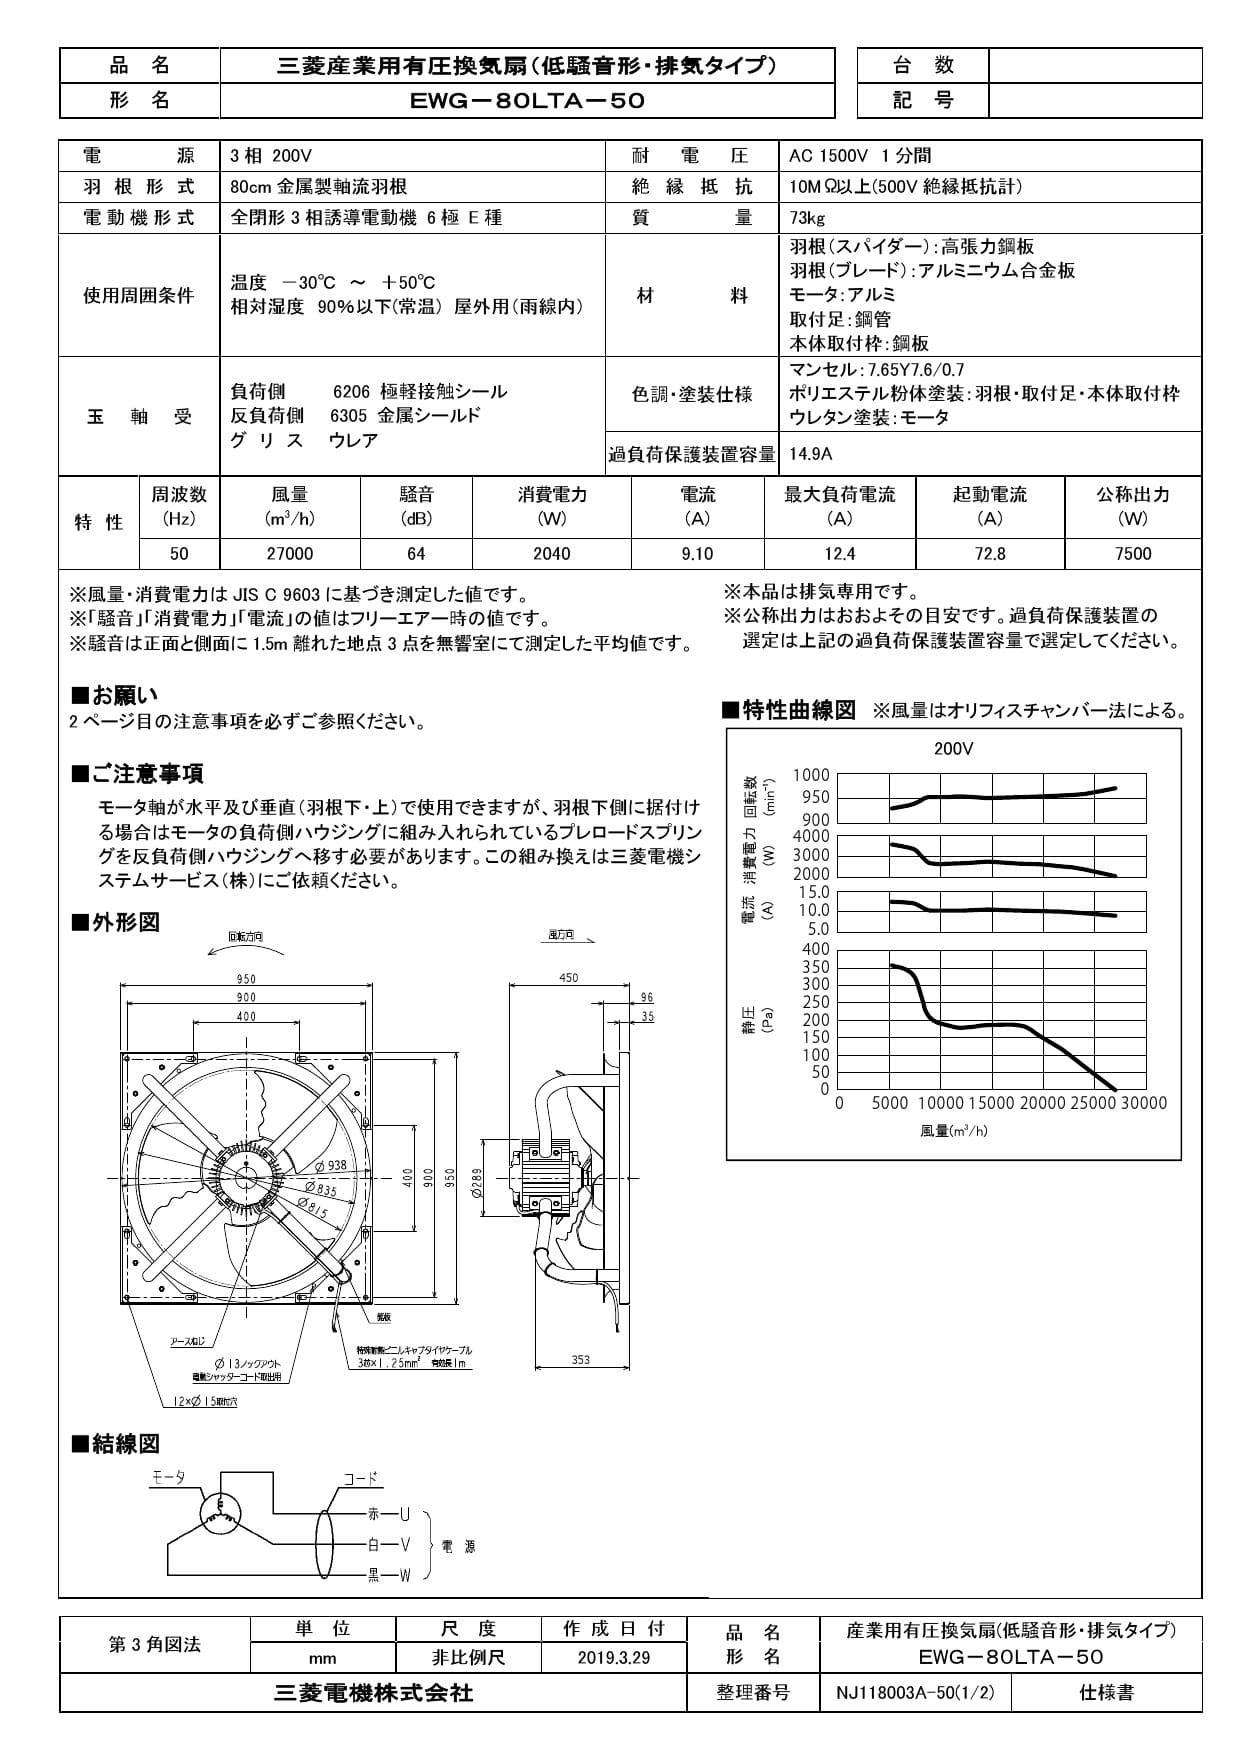 三菱電機 EWG-80LTA-50取扱説明書 施工説明書 納入仕様図 | 通販 プロストア ダイレクト